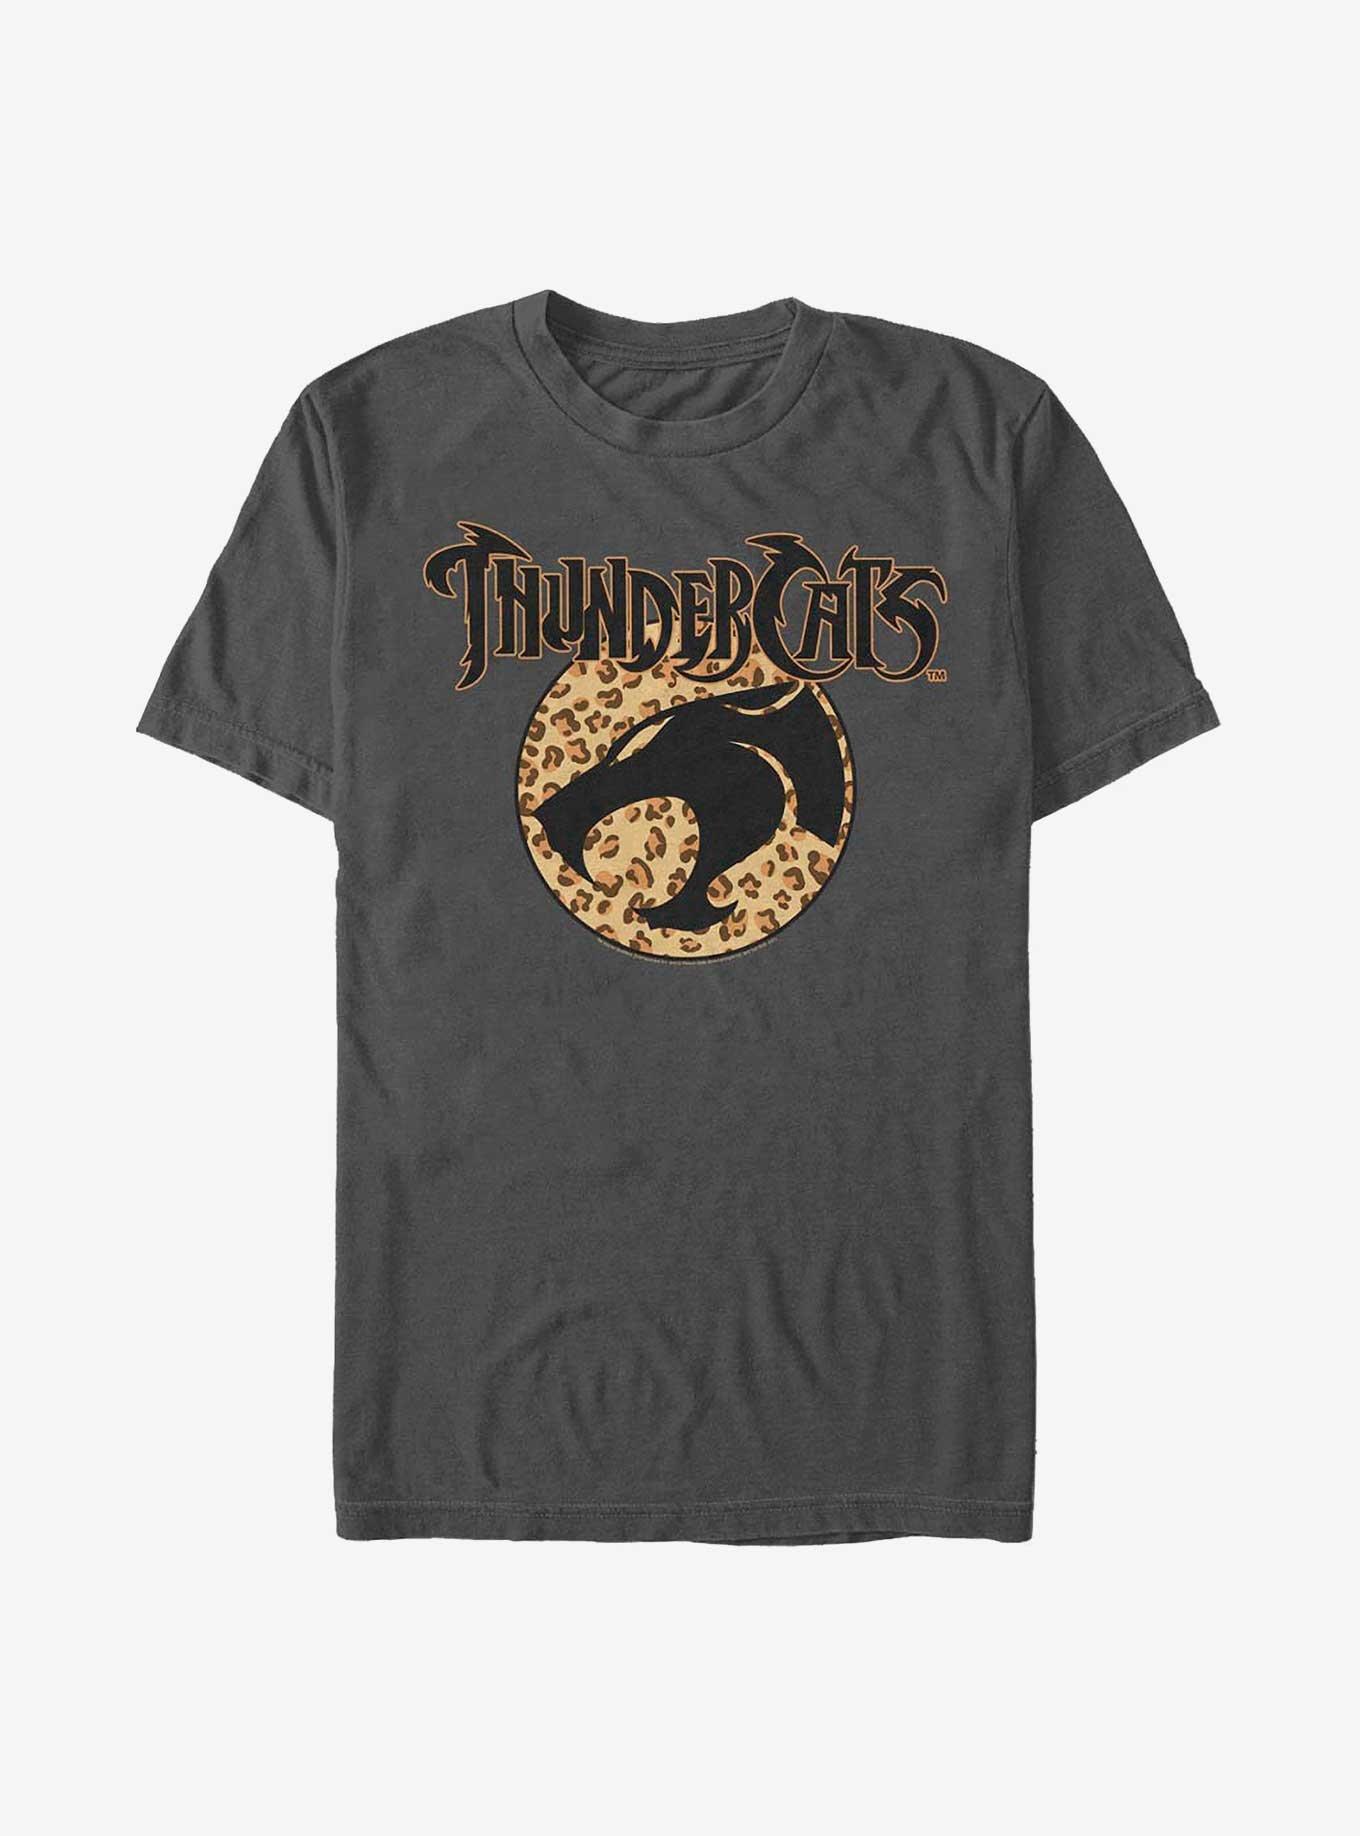 Thundercats Cheetah Print Logo T-Shirt, CHARCOAL, hi-res